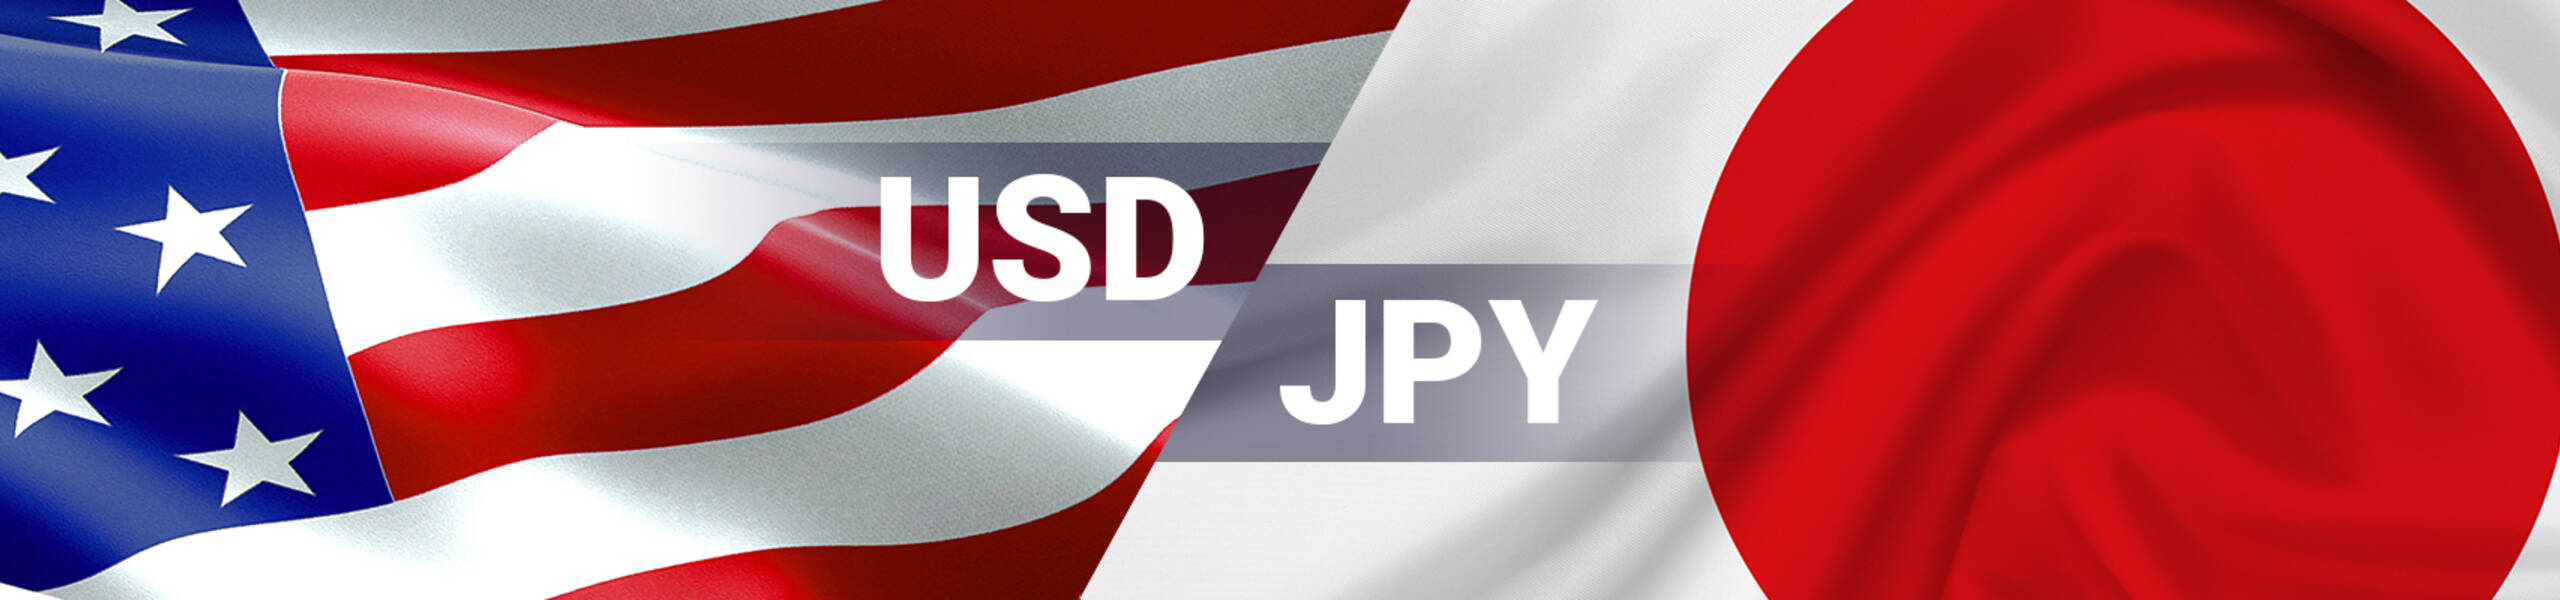 USD/JPY 週間マーケットレポート 2018/03/05 ～2018/03/09